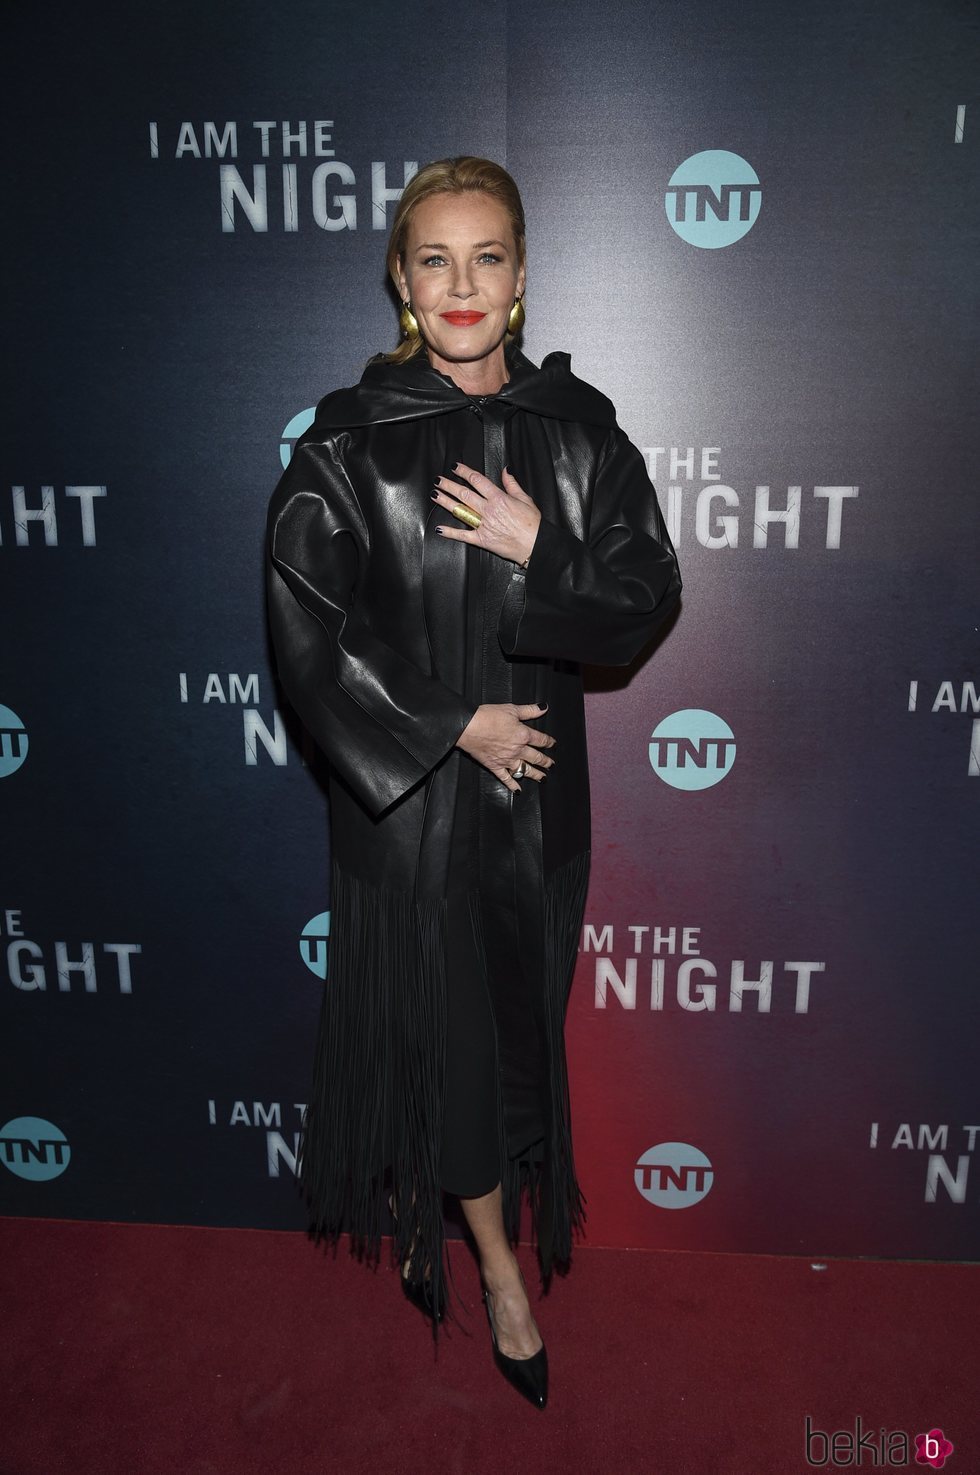 Connie Nielsen de negro en el preestreno de "I am the night"